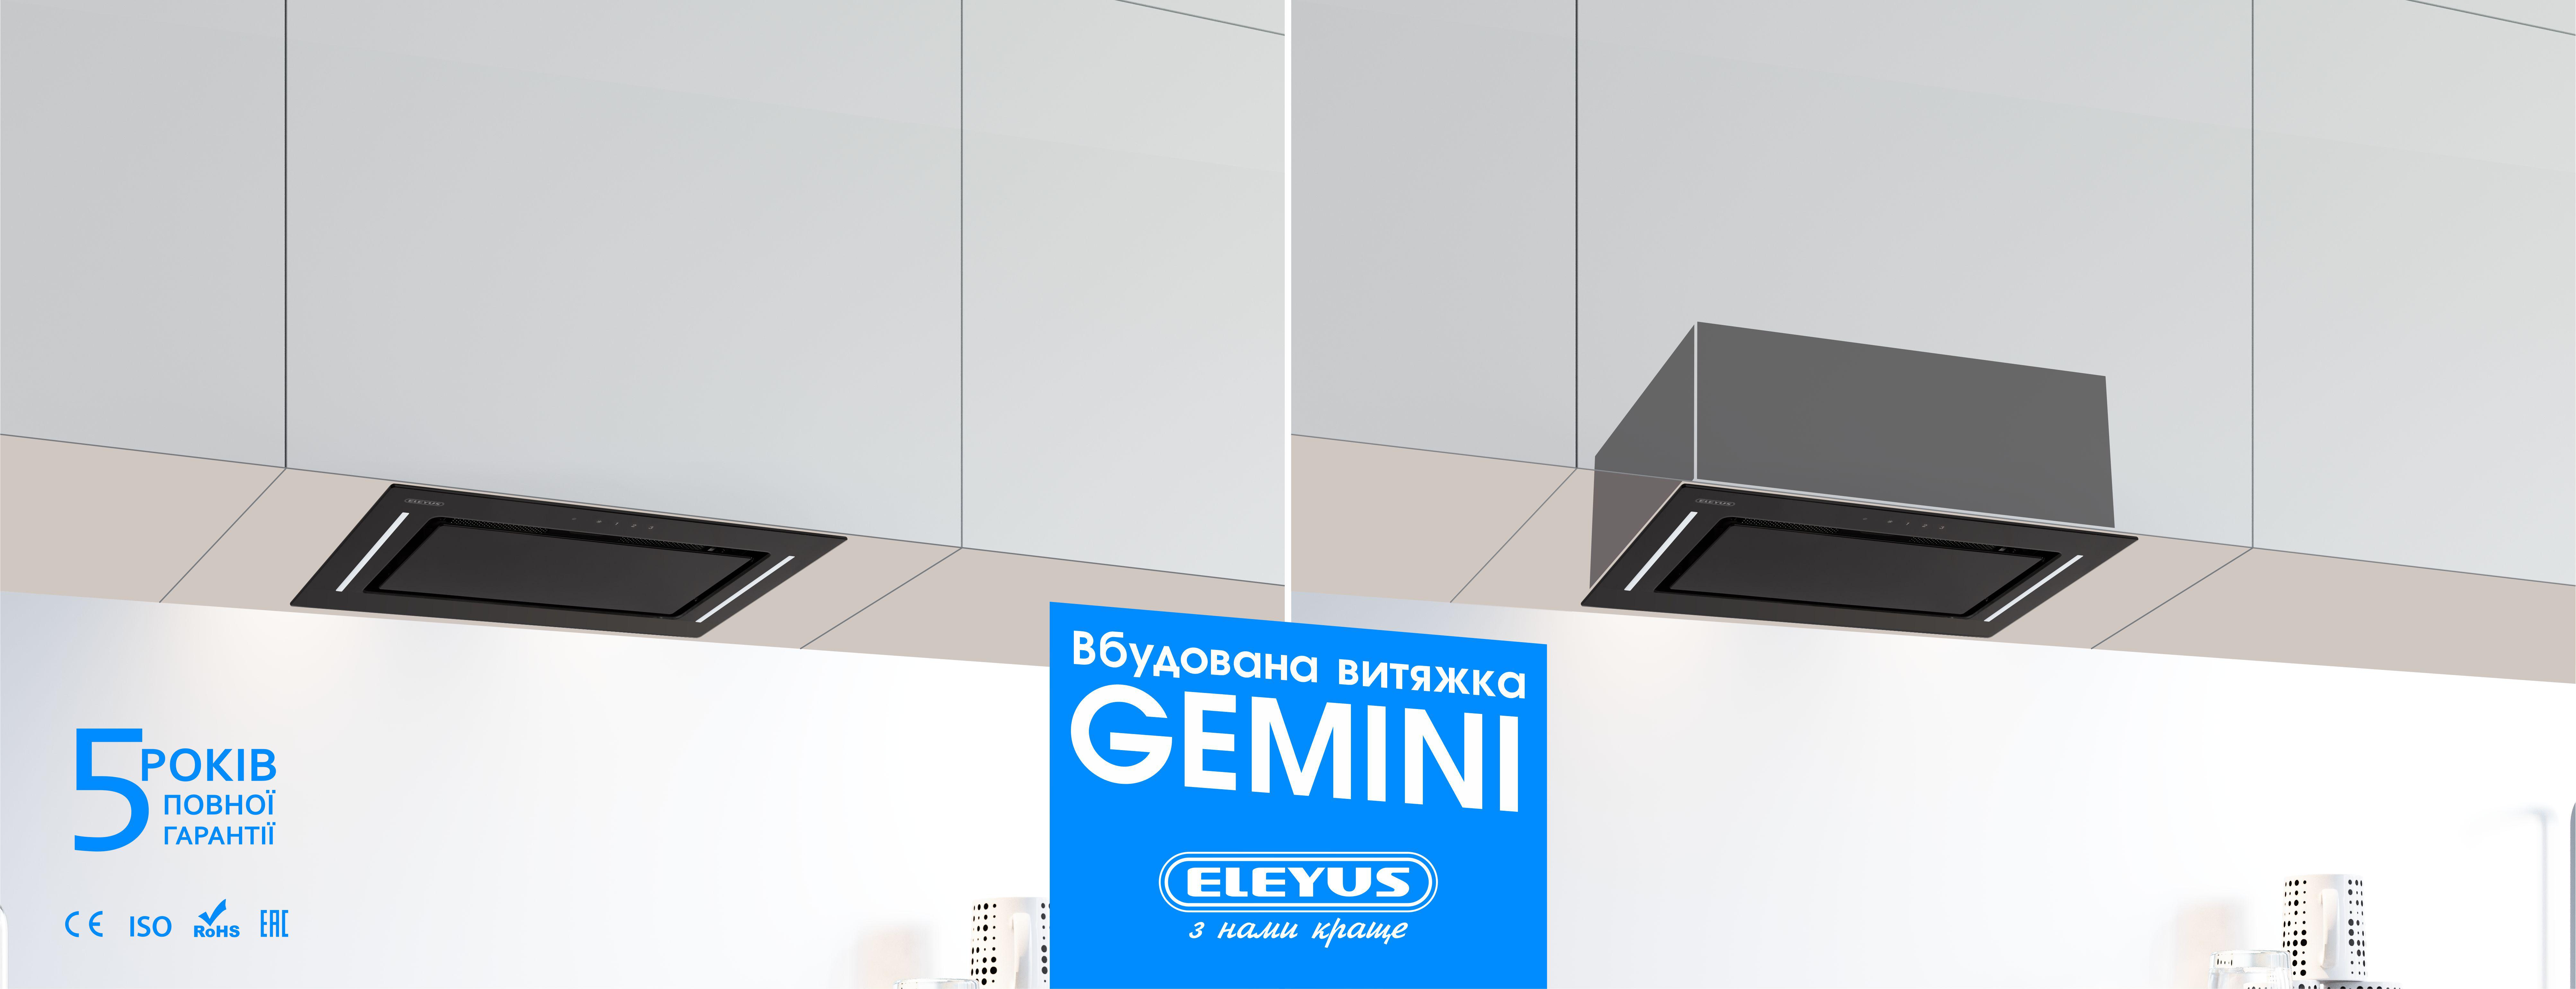 Eleyus Gemini 800 LED 52 BL в магазине - фото 17